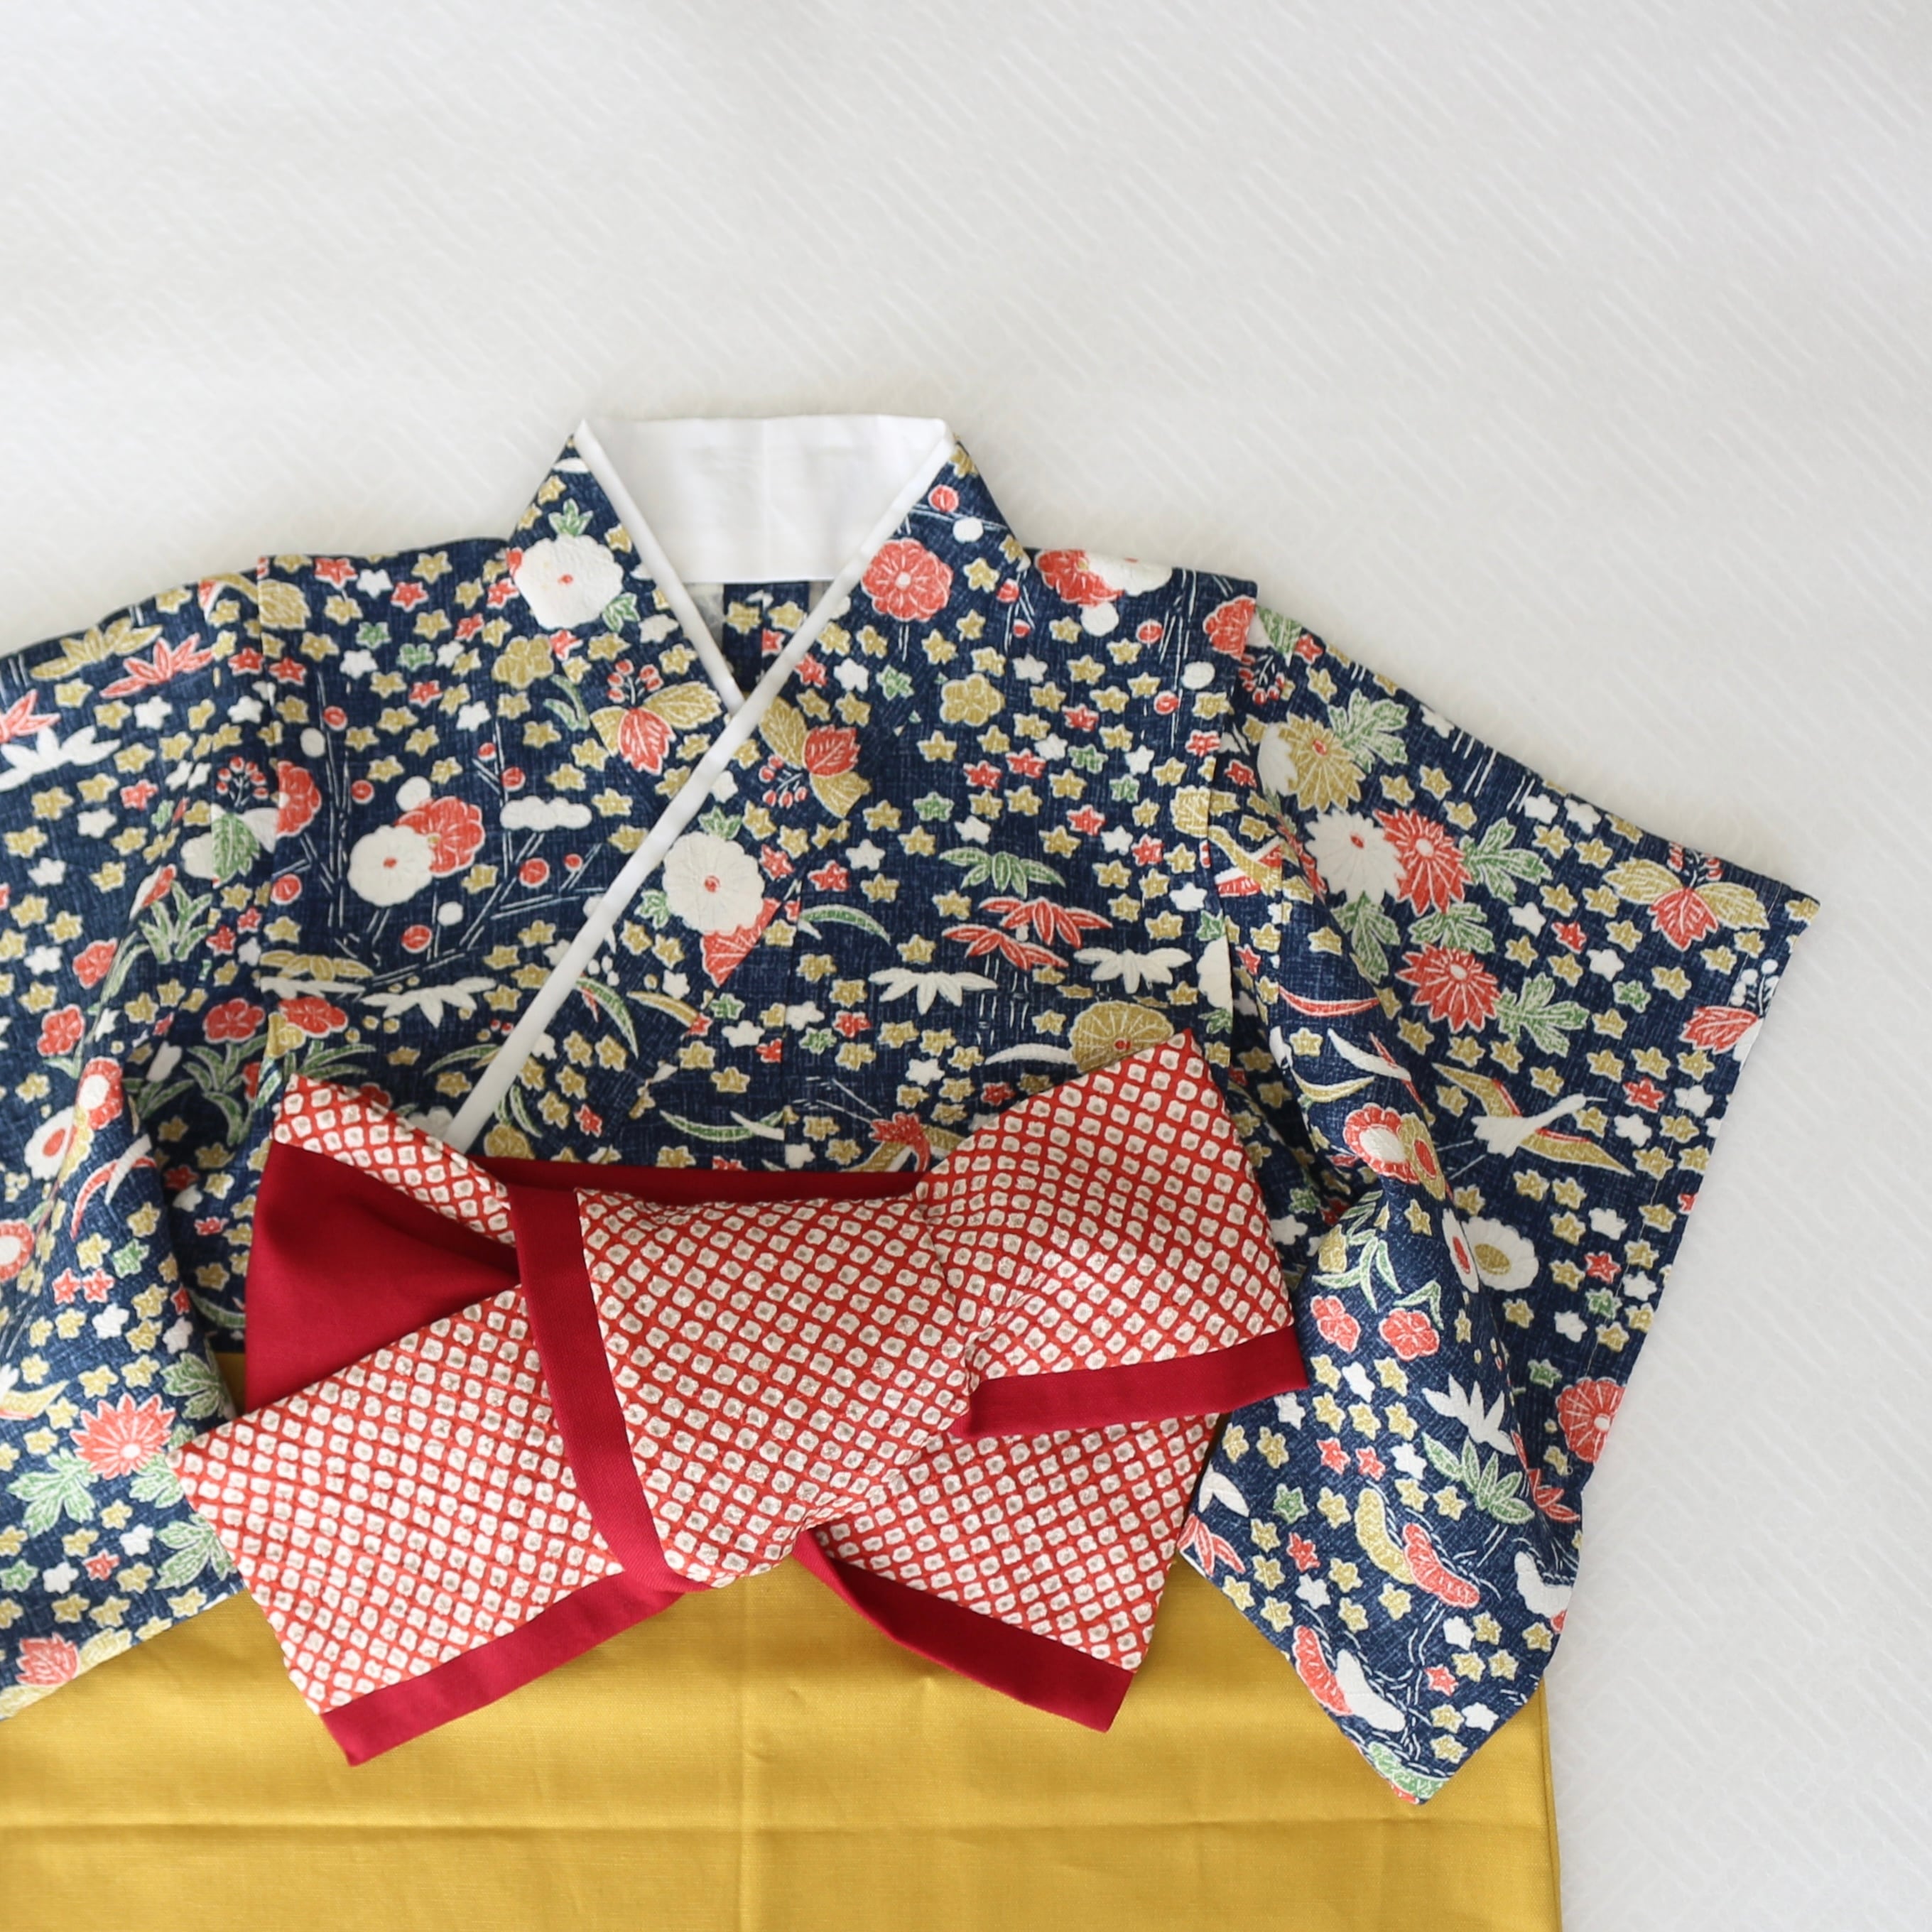 ベビー袴❁ひな祭り❁鶴に草花模様小紋 正絹着物の袴ロンパース 70〜80